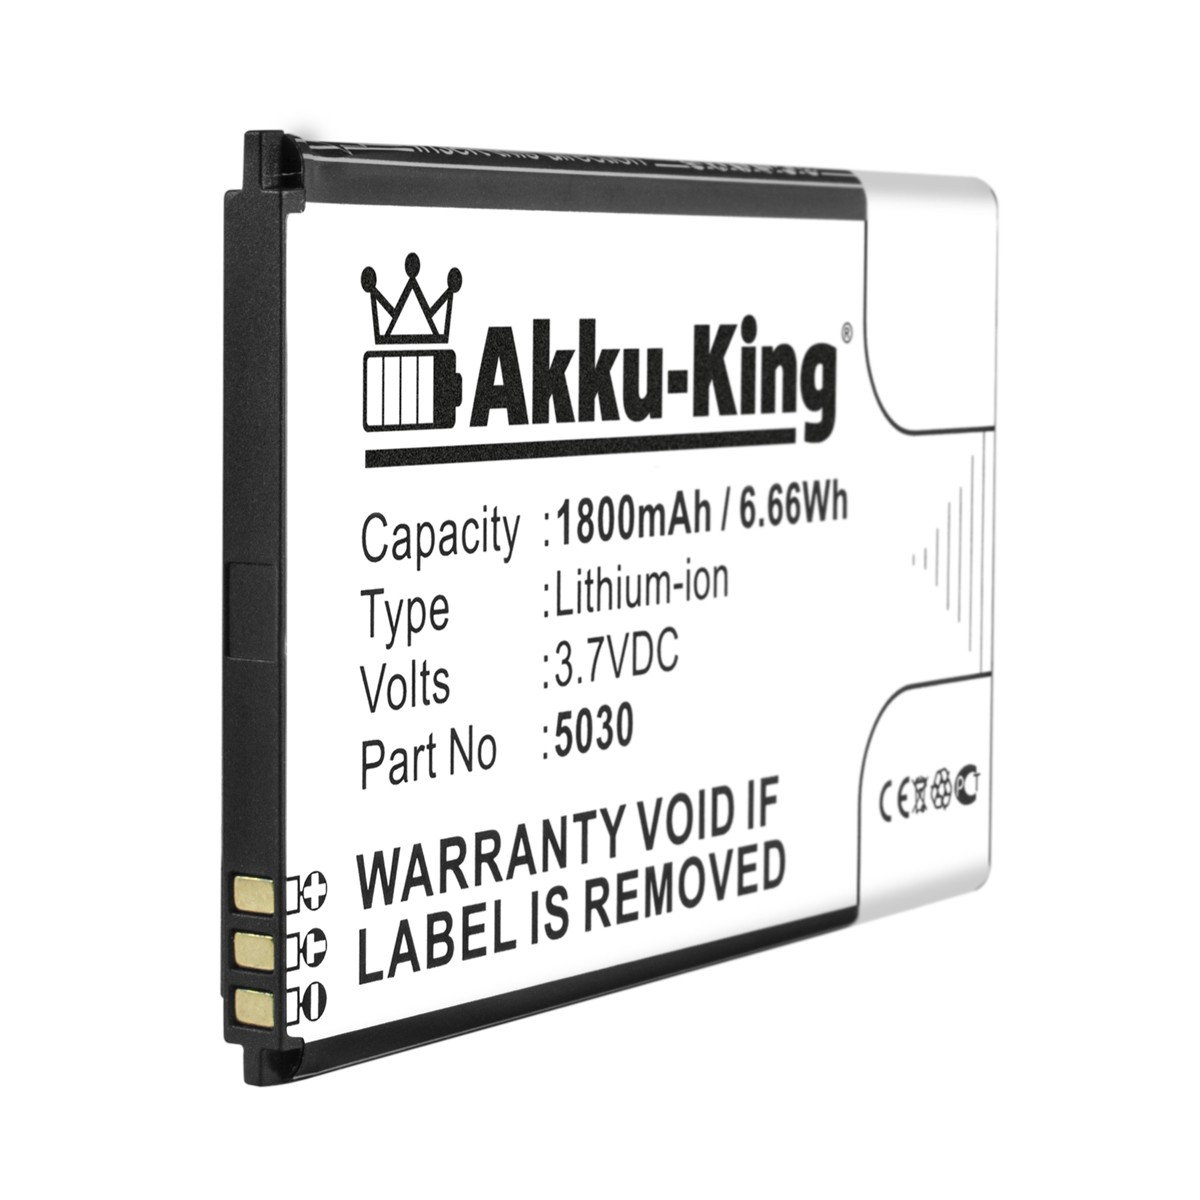 AKKU-KING Akku kompatibel 1800mAh Li-Ion Wiko 5030 mit 3.7 Handy-Akku, Volt